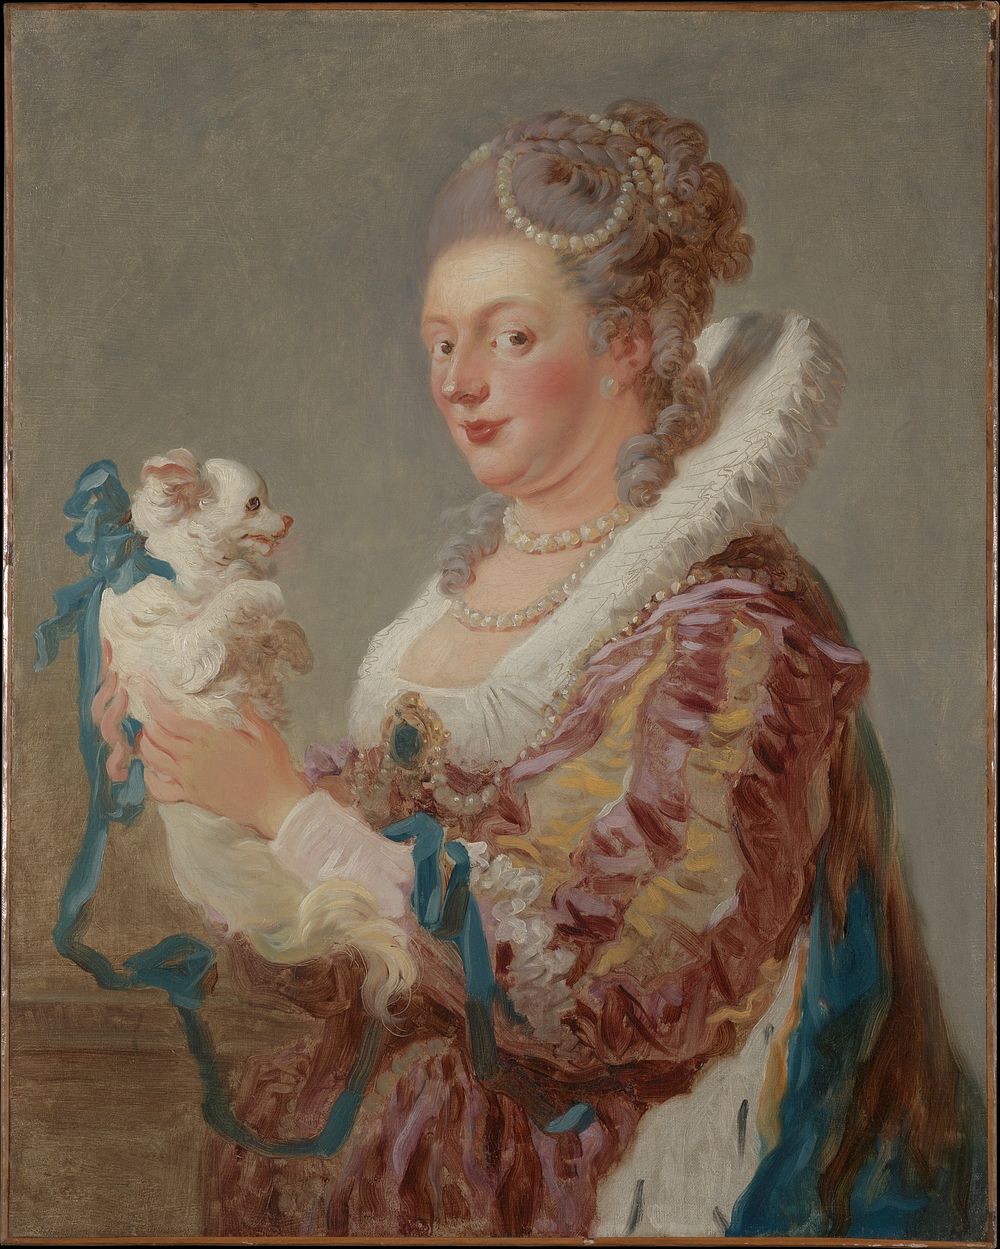 A Woman with a Dog by Jean-Honoré Fragonard